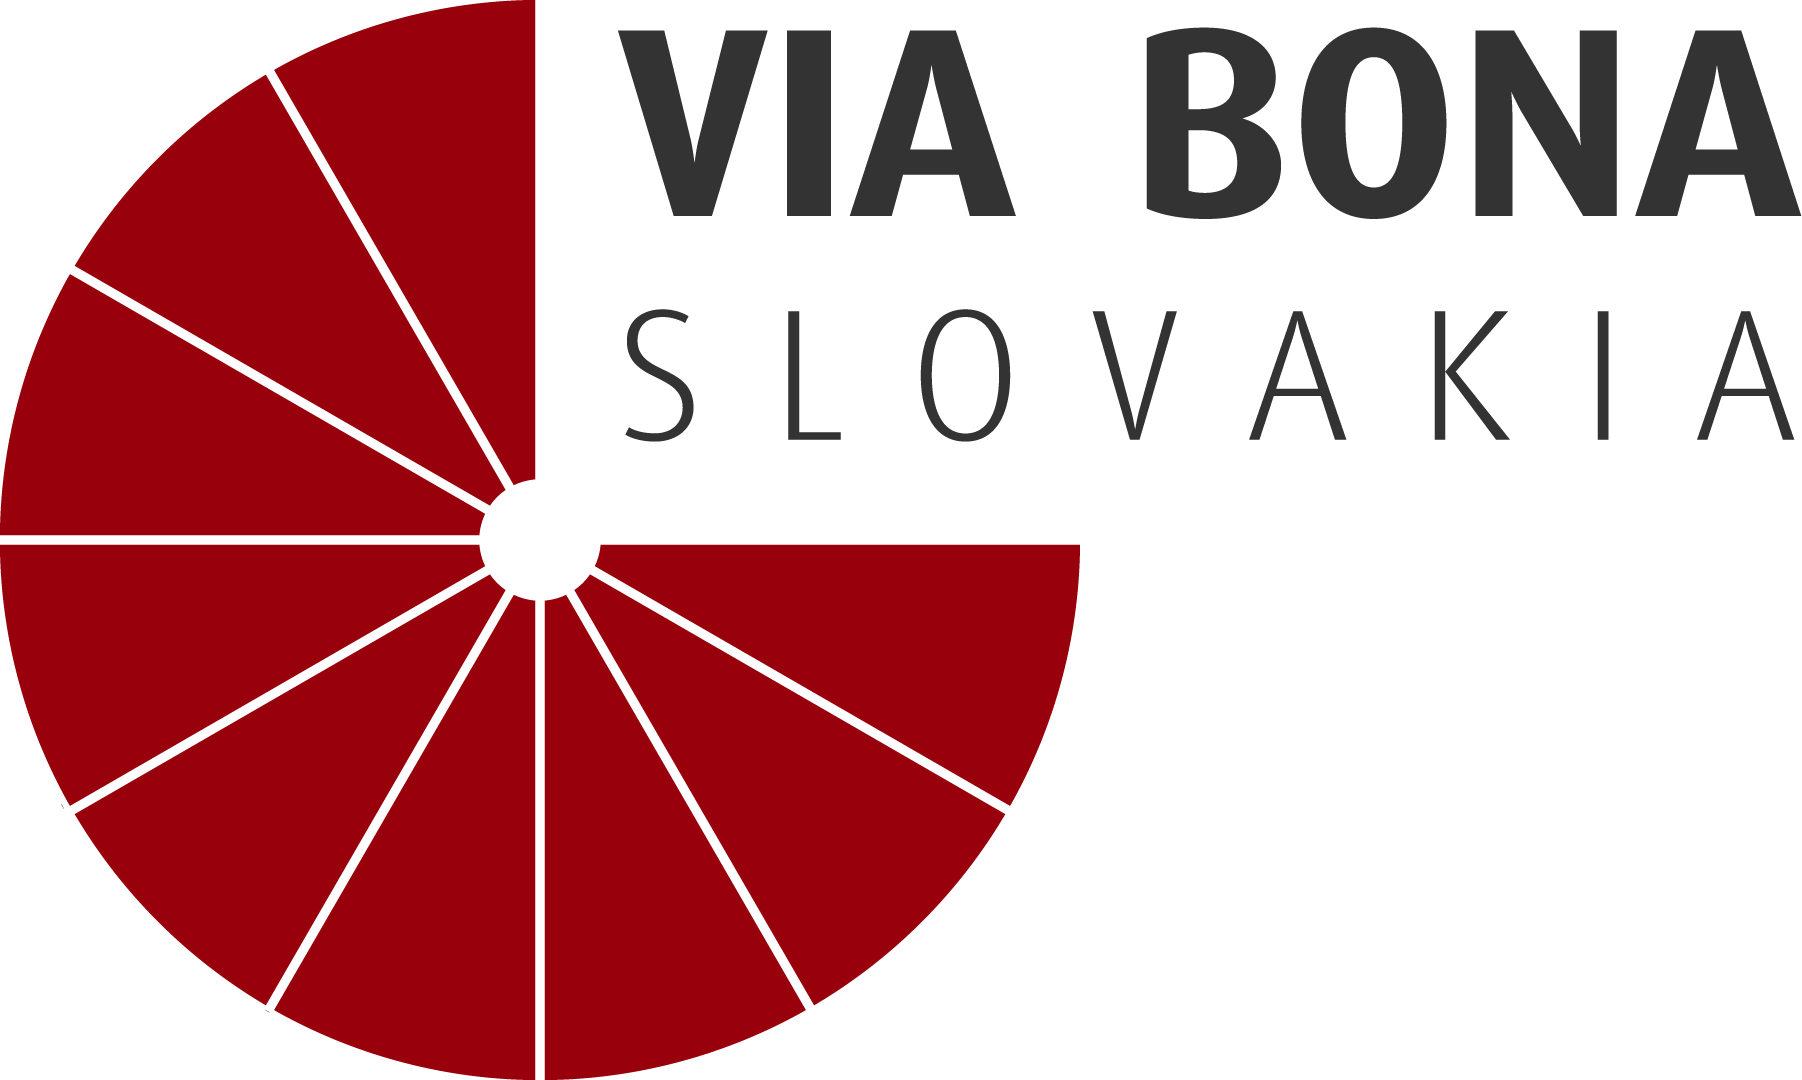 Via Bona Slovakia logo